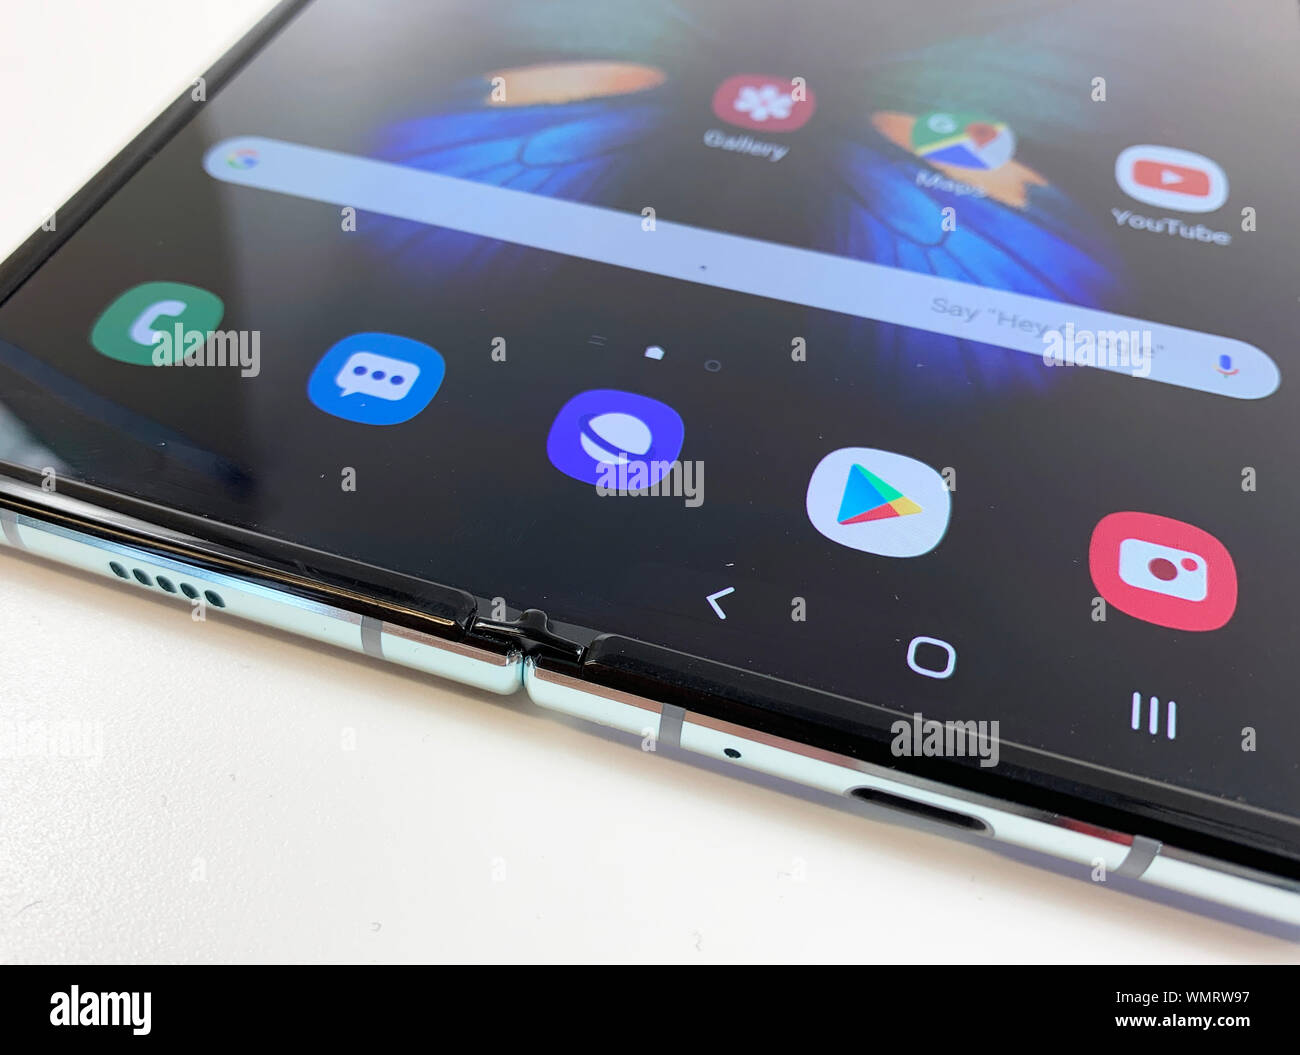 La versione aggiornata di Samsung Galaxy piega, che sta andando in vendita nel Regno Unito il 18 settembre. Il nuovo dispositivo è stato mostrato-off presso l'IFA technology trade show di Berlino. Foto Stock